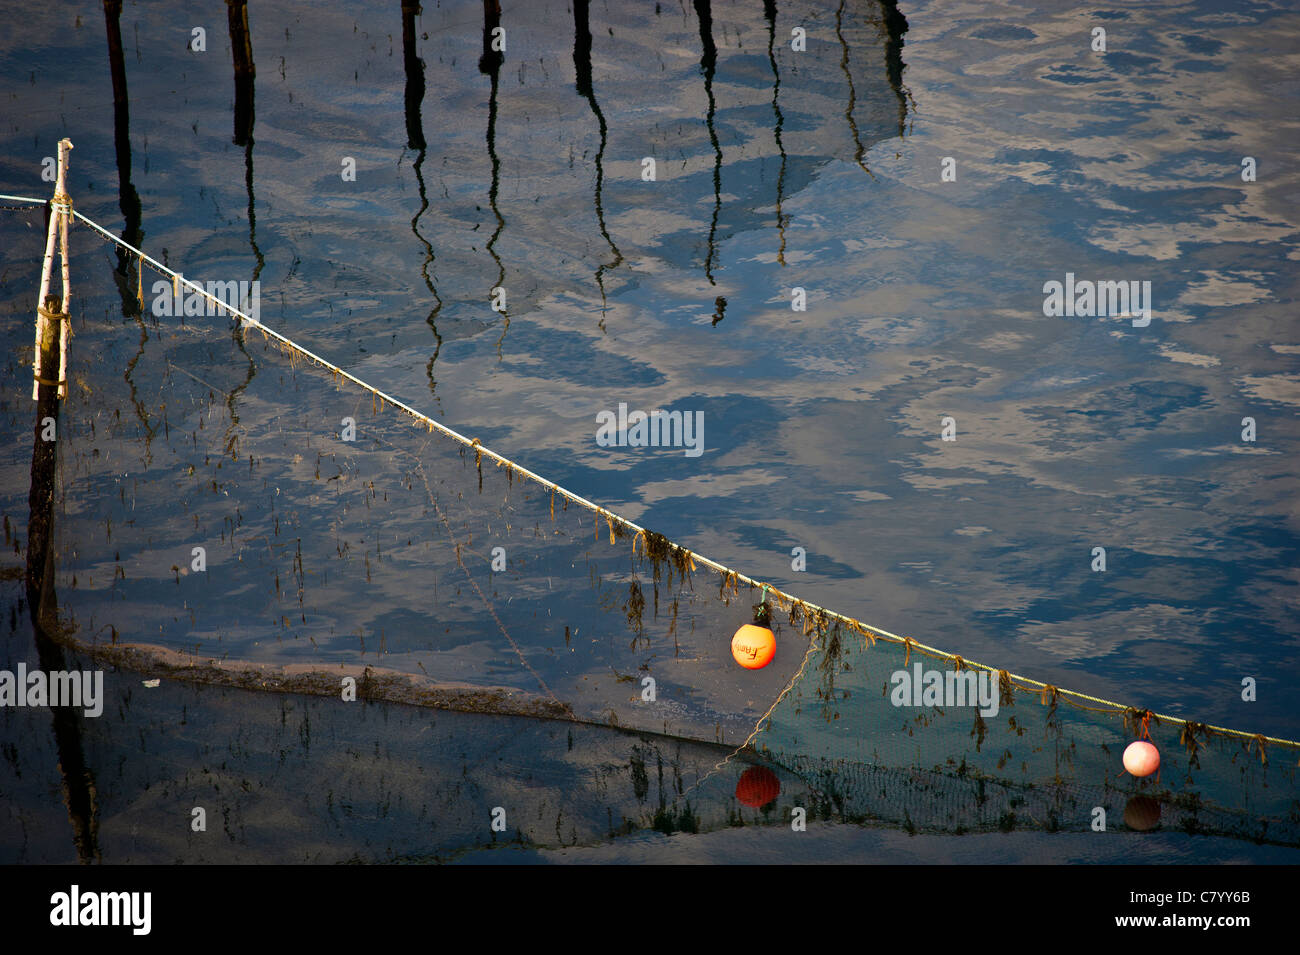 Pêche à la ligne de plomb Weir dans la baie de Fundy près de l'île Grand Manan, Canada Banque D'Images